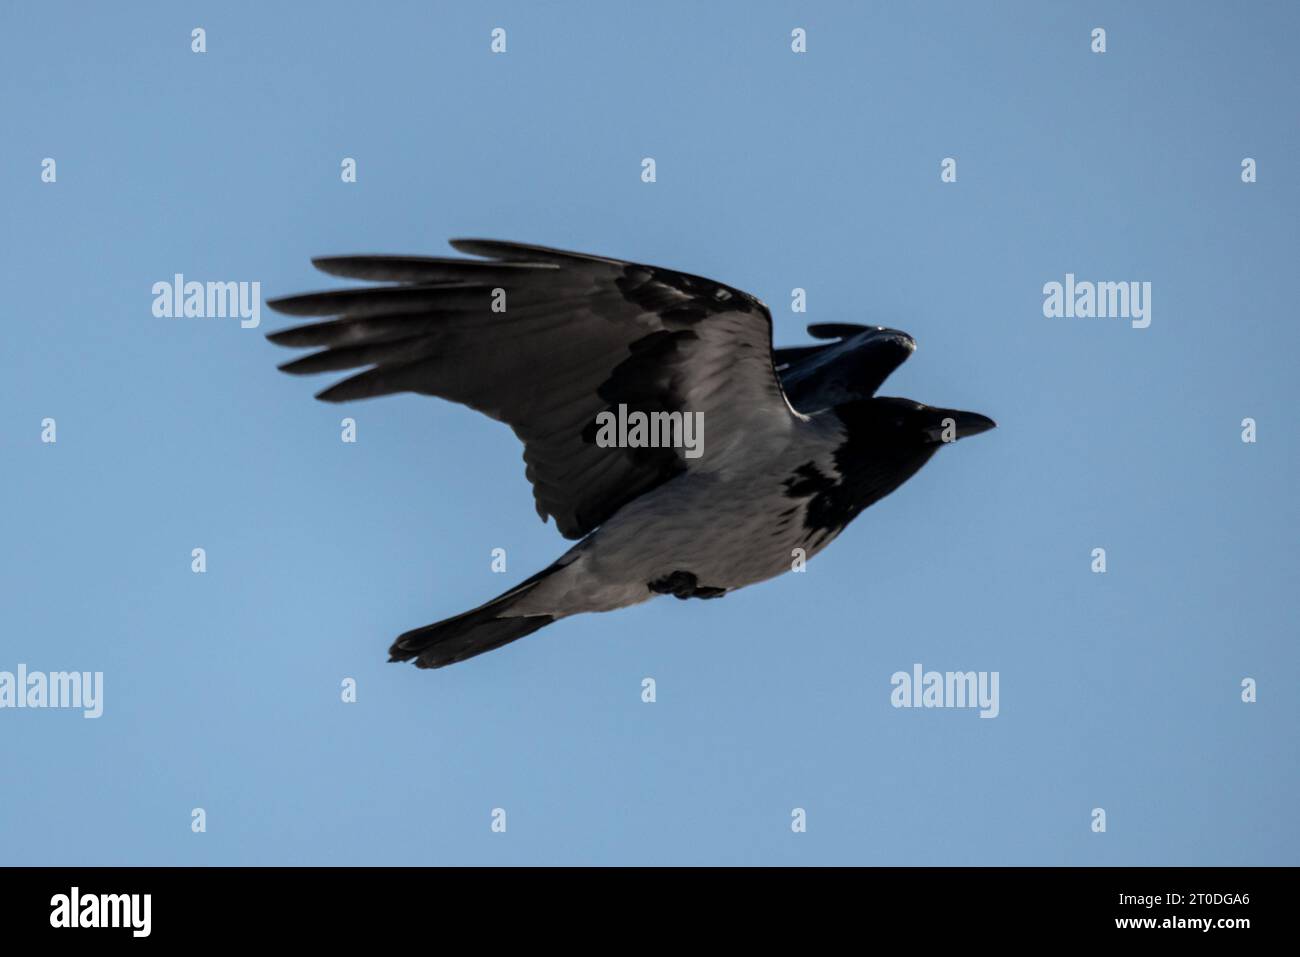 Un corbeau à capuche vole dans le ciel bleu sur une photo de jour, gros plan Banque D'Images